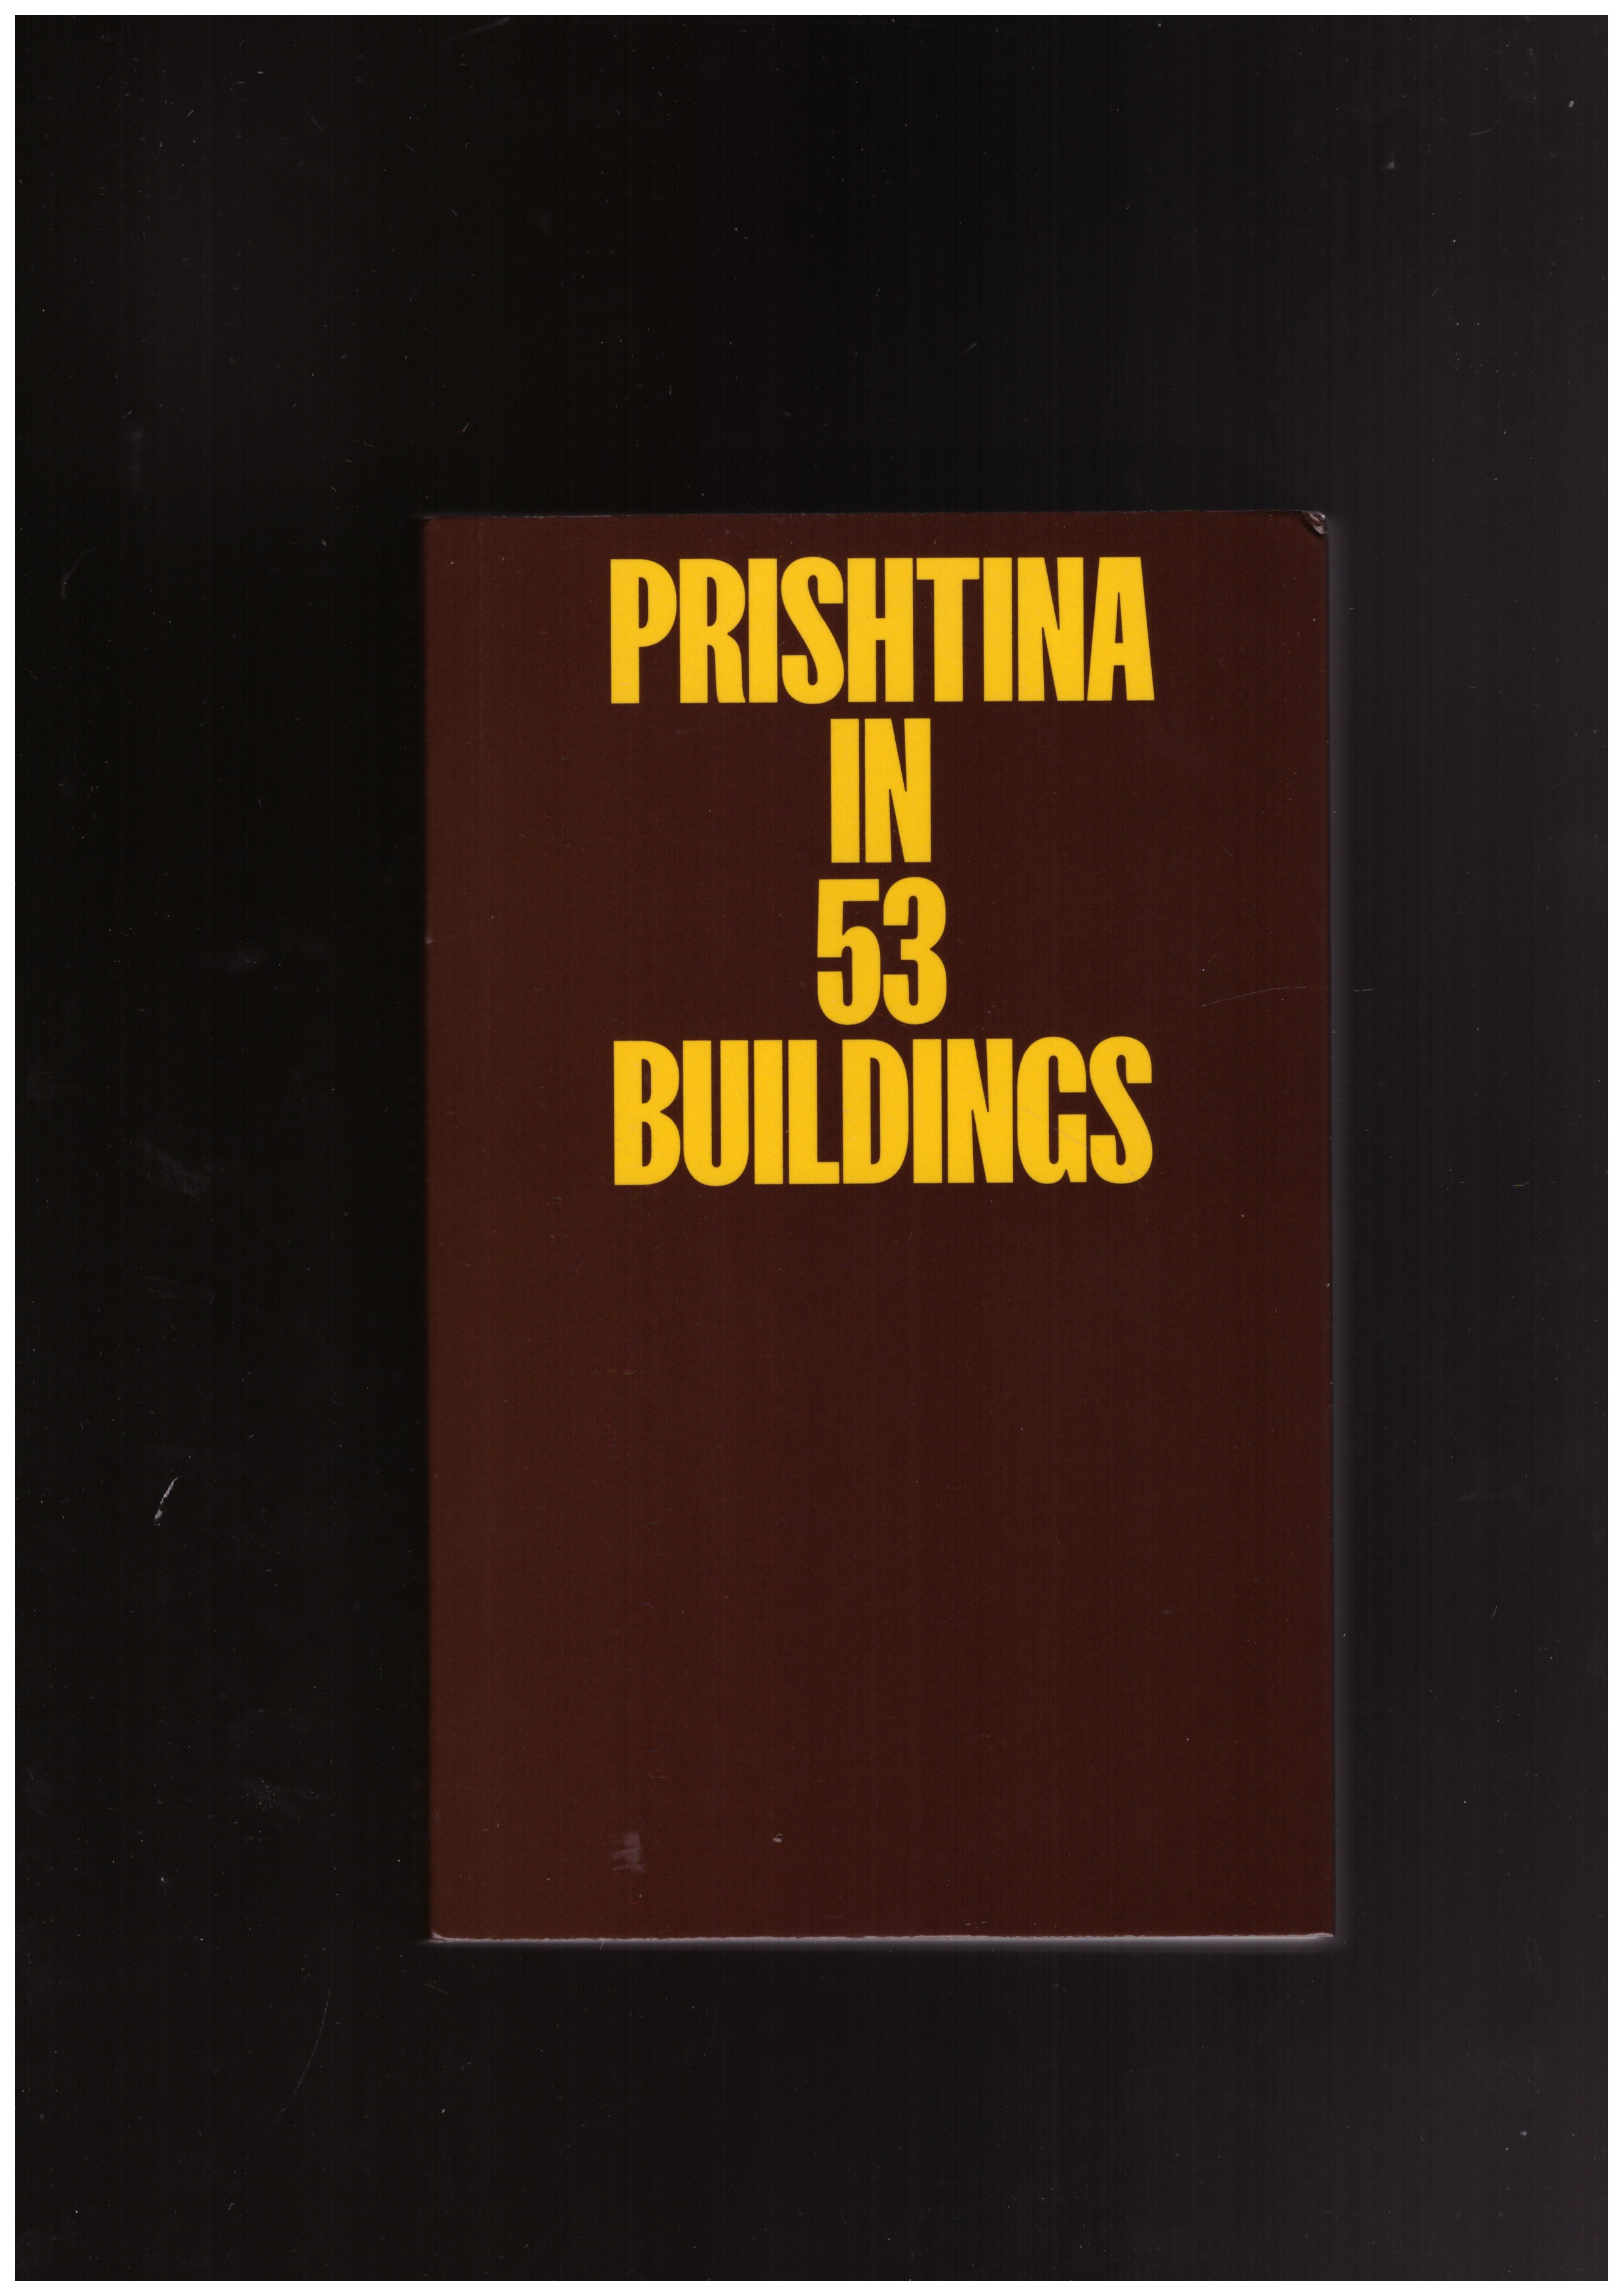 KÖNIG, Jonas; LUZHNICA, Donika (ed.) - Prishtina in 53 Buildings